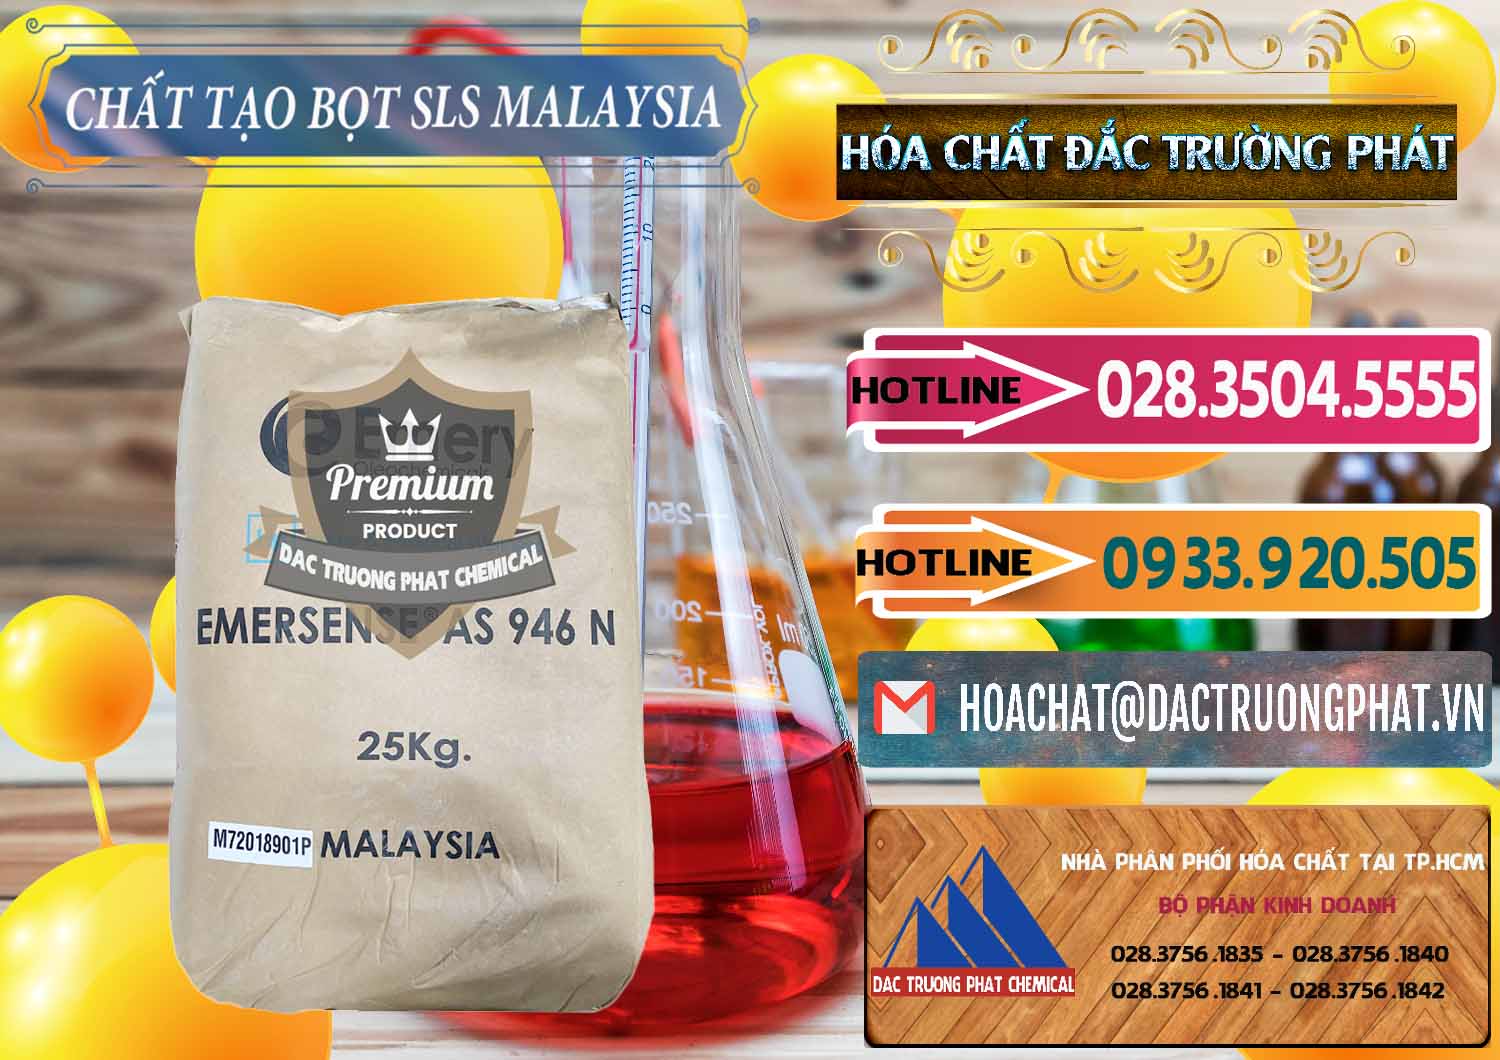 Bán - cung ứng Chất Tạo Bọt SLS Emery - Emersense AS 946N Mã Lai Malaysia - 0423 - Cty chuyên nhập khẩu _ phân phối hóa chất tại TP.HCM - dactruongphat.vn